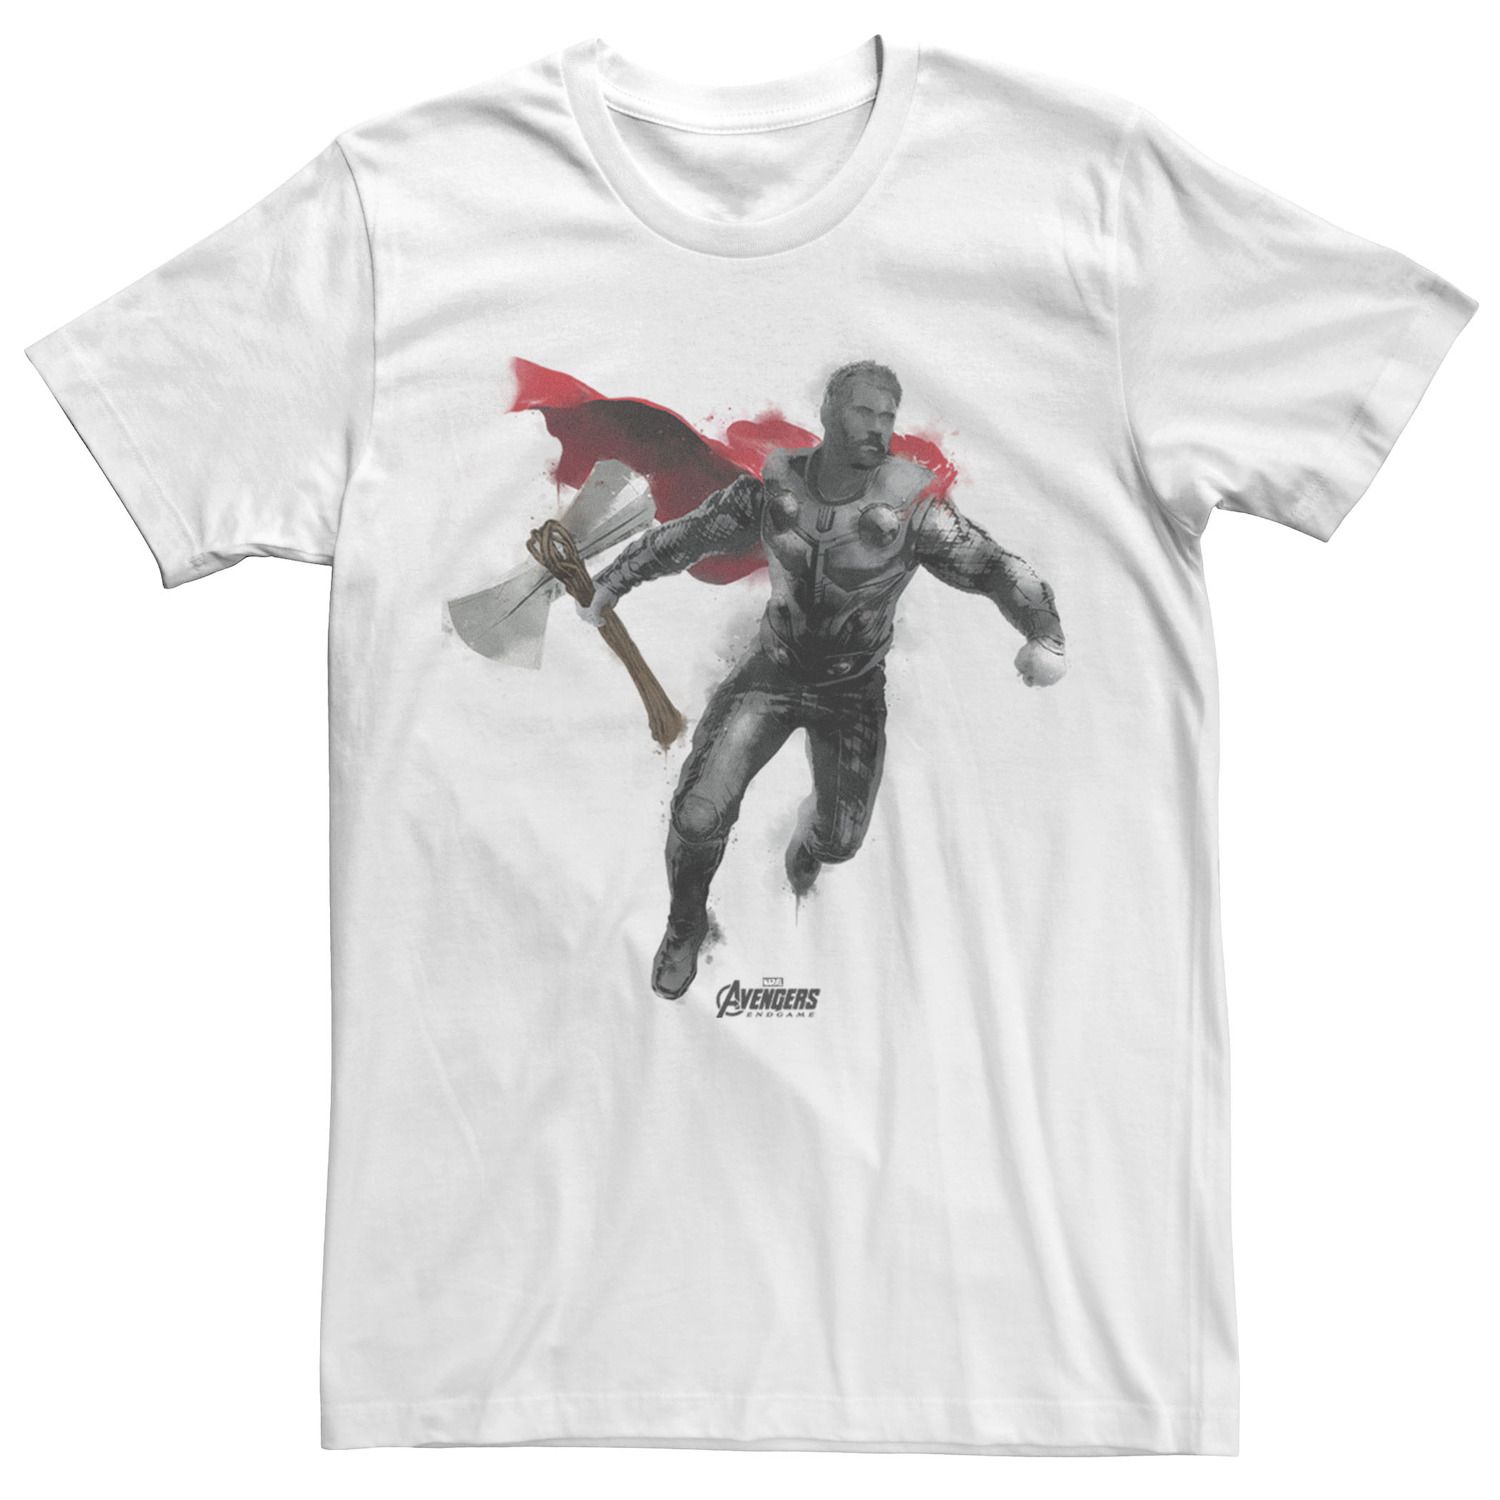 Мужская футболка Avengers Endgame Thor с аэрозольной краской Marvel